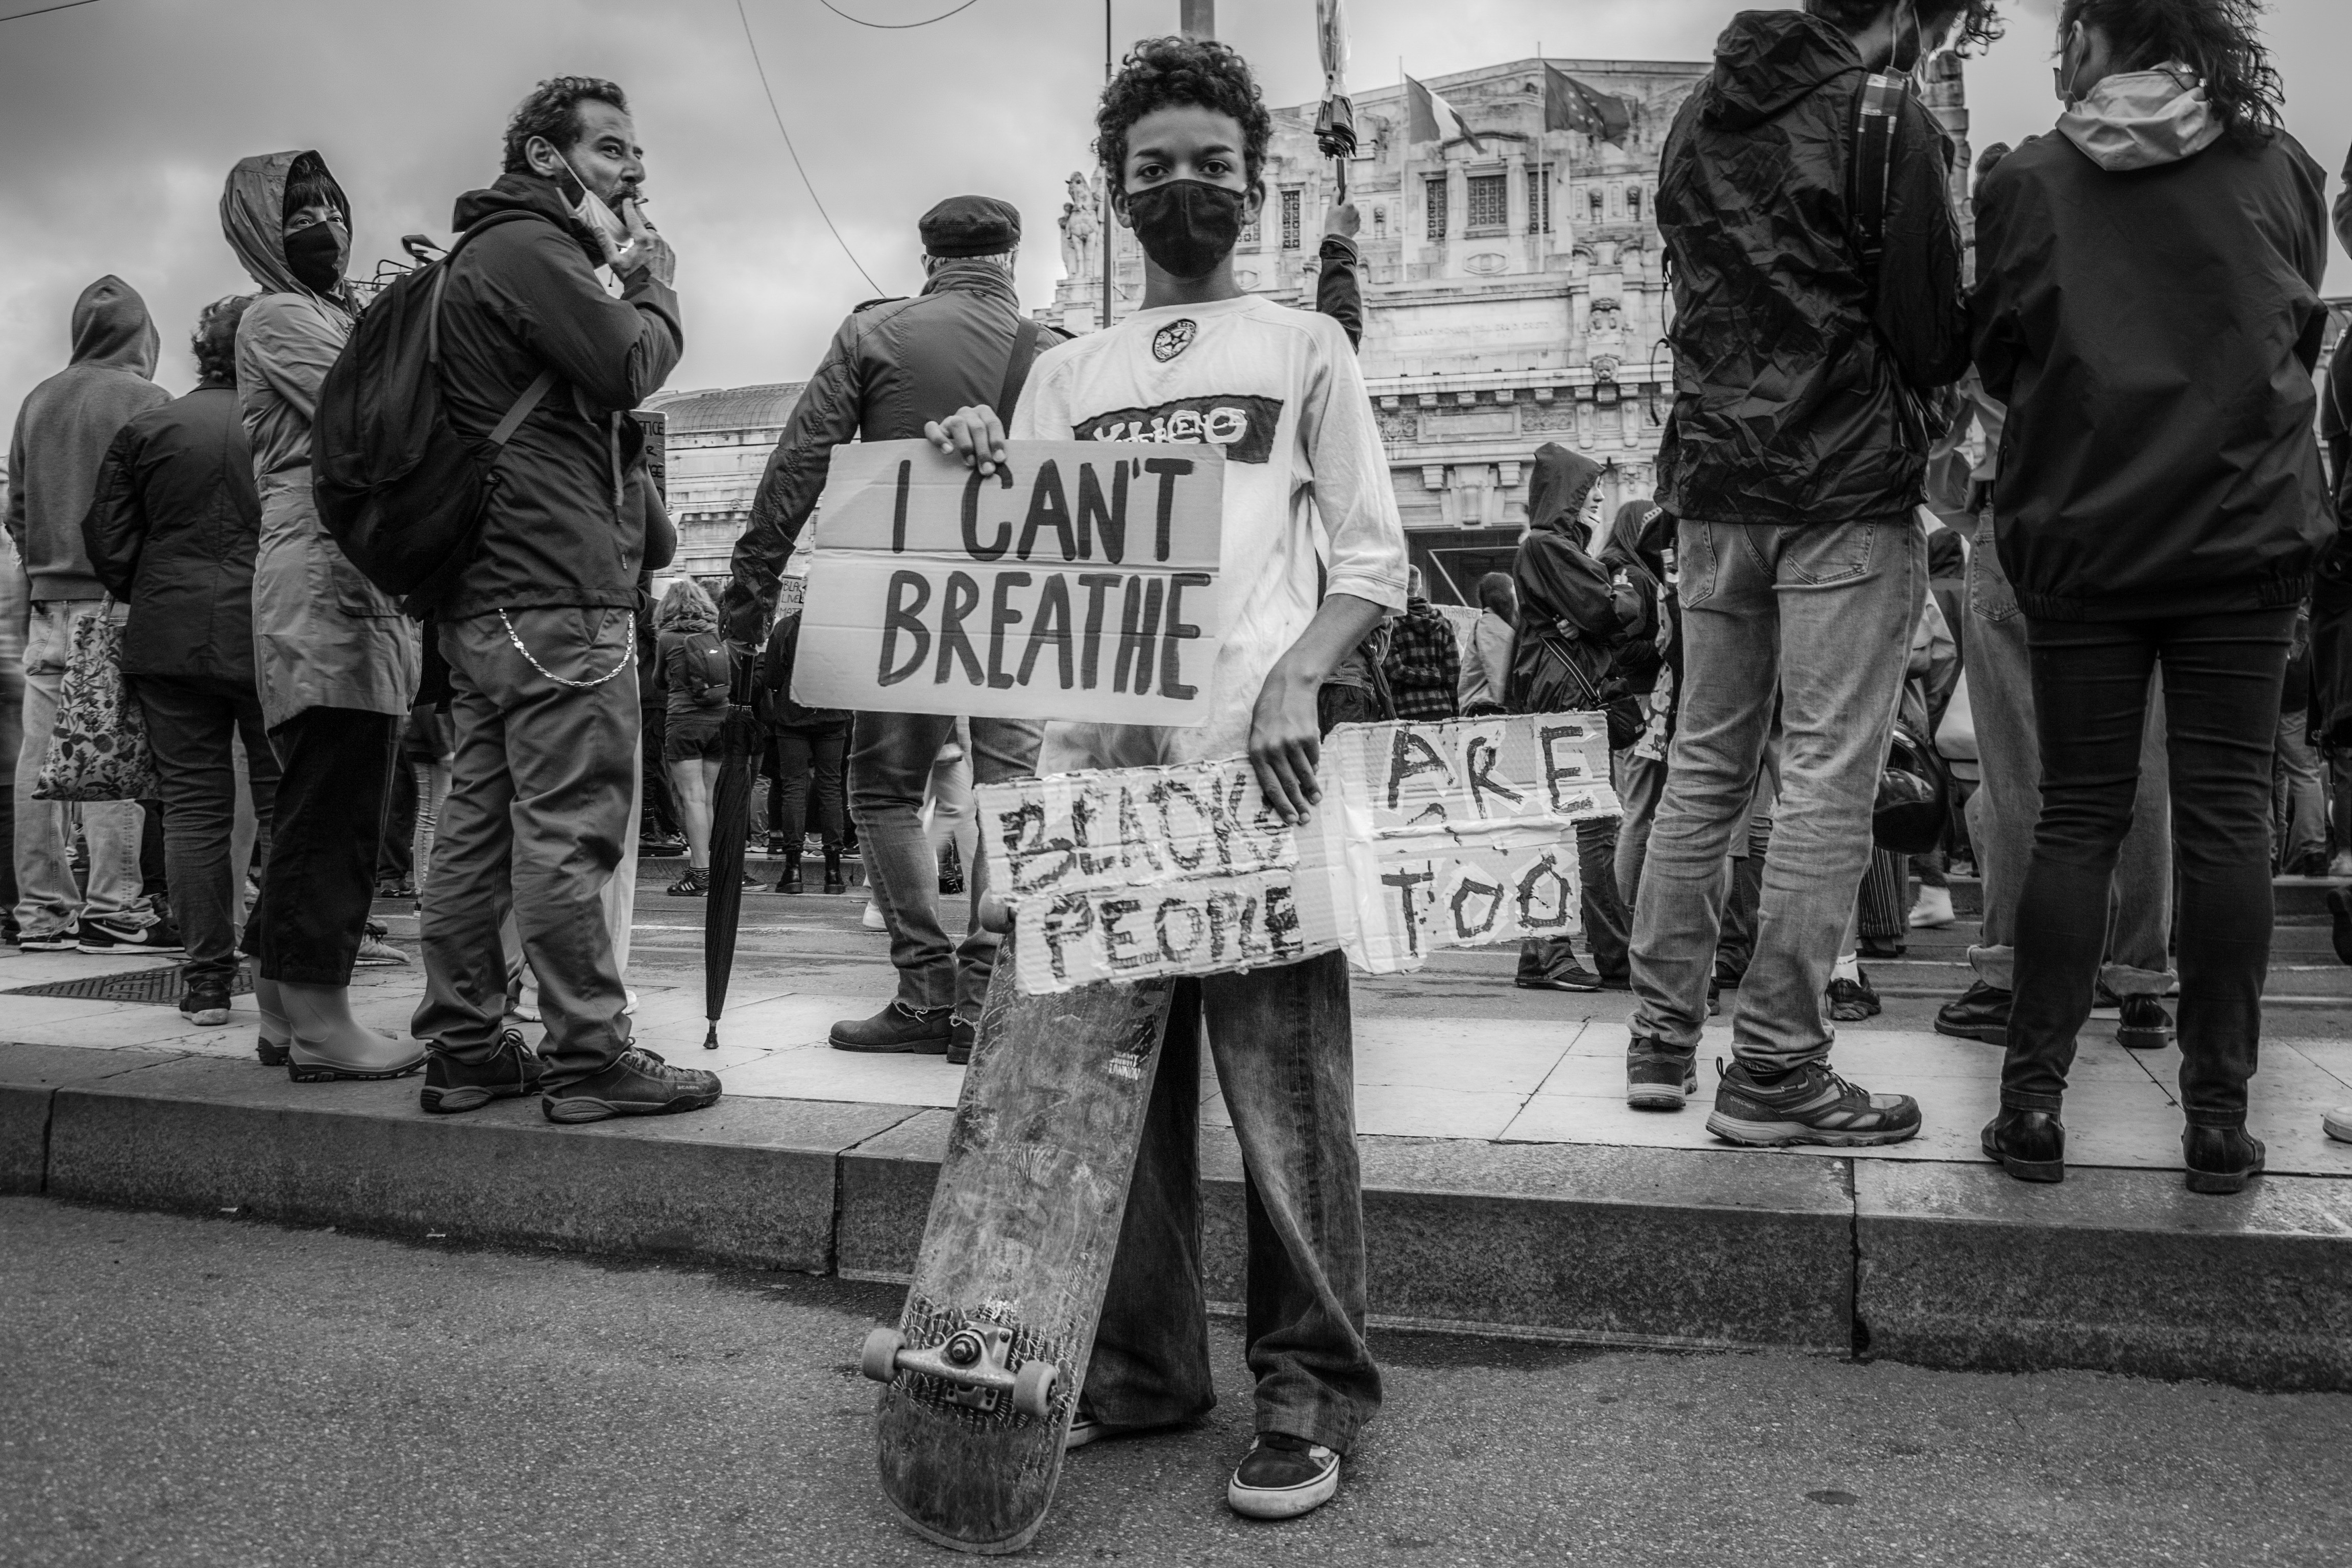 Un adolescente tiene il suo skateboard mostrando messaggi e cartelli ai fotografi (foto di Luca Covino)